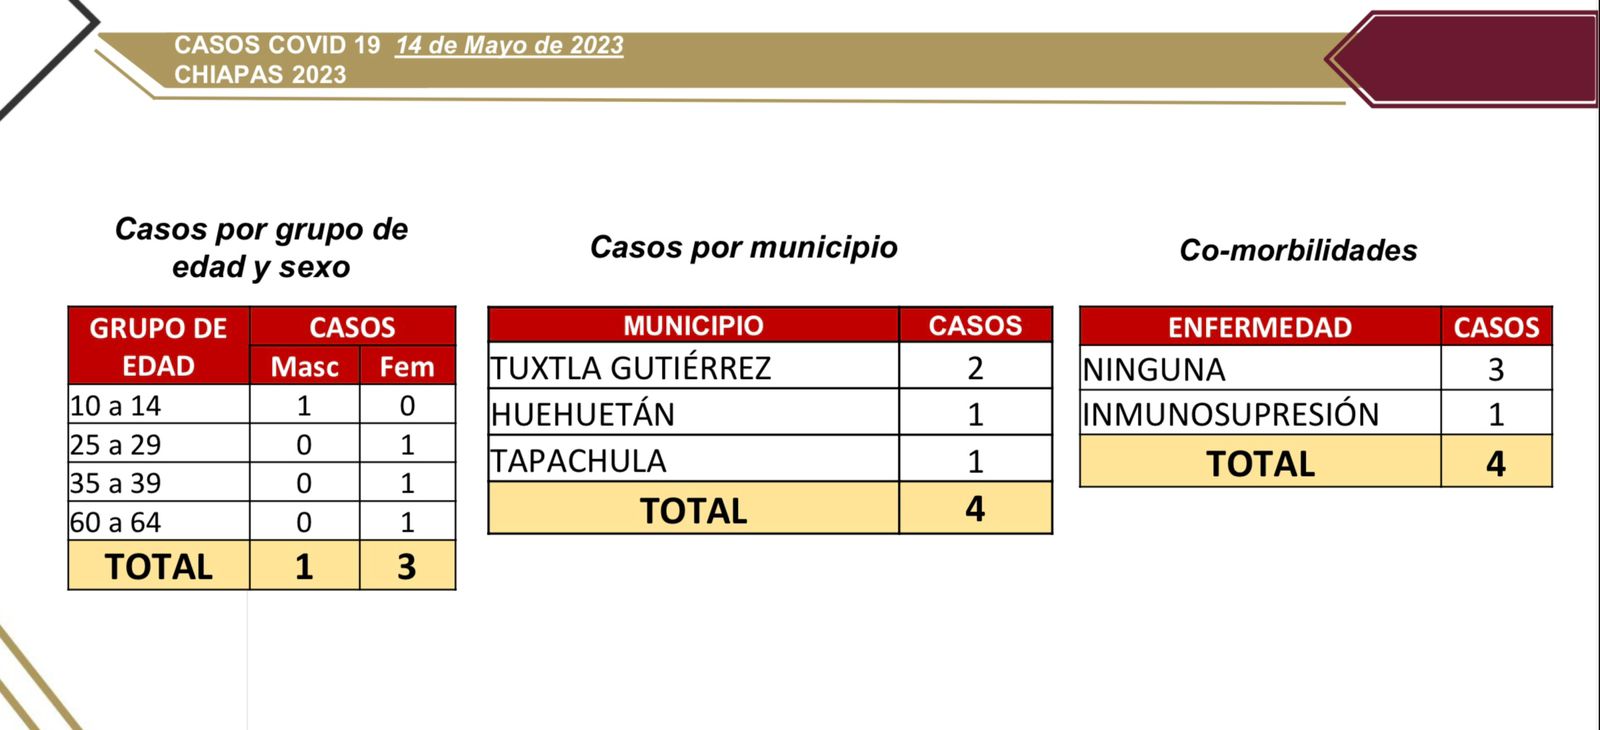 Sólo 4 casos nuevos de COVID-19 en Chiapas